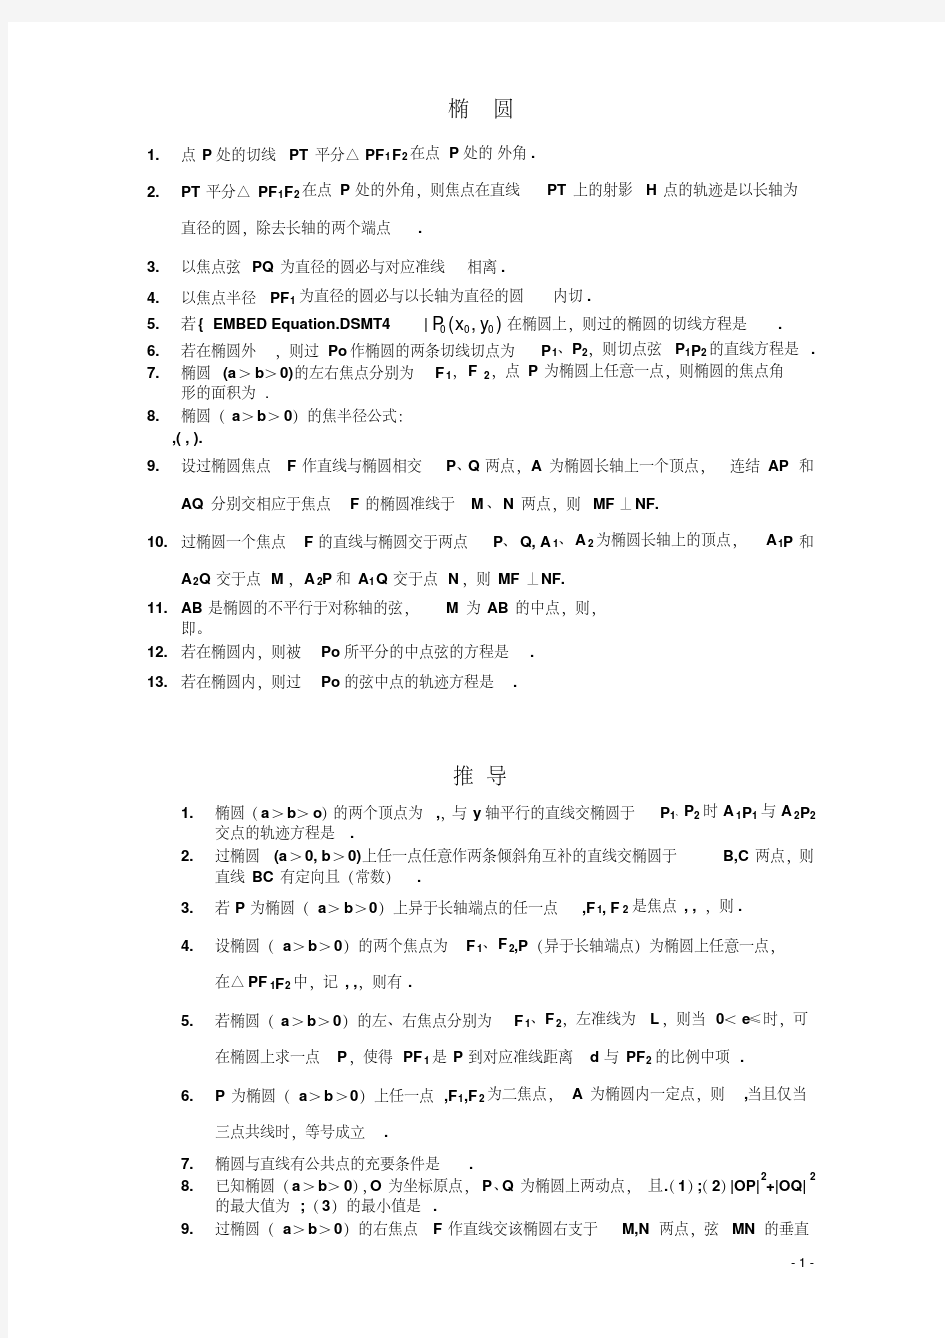 人教版高中数学选修选修椭圆公式大全(20191126003245)